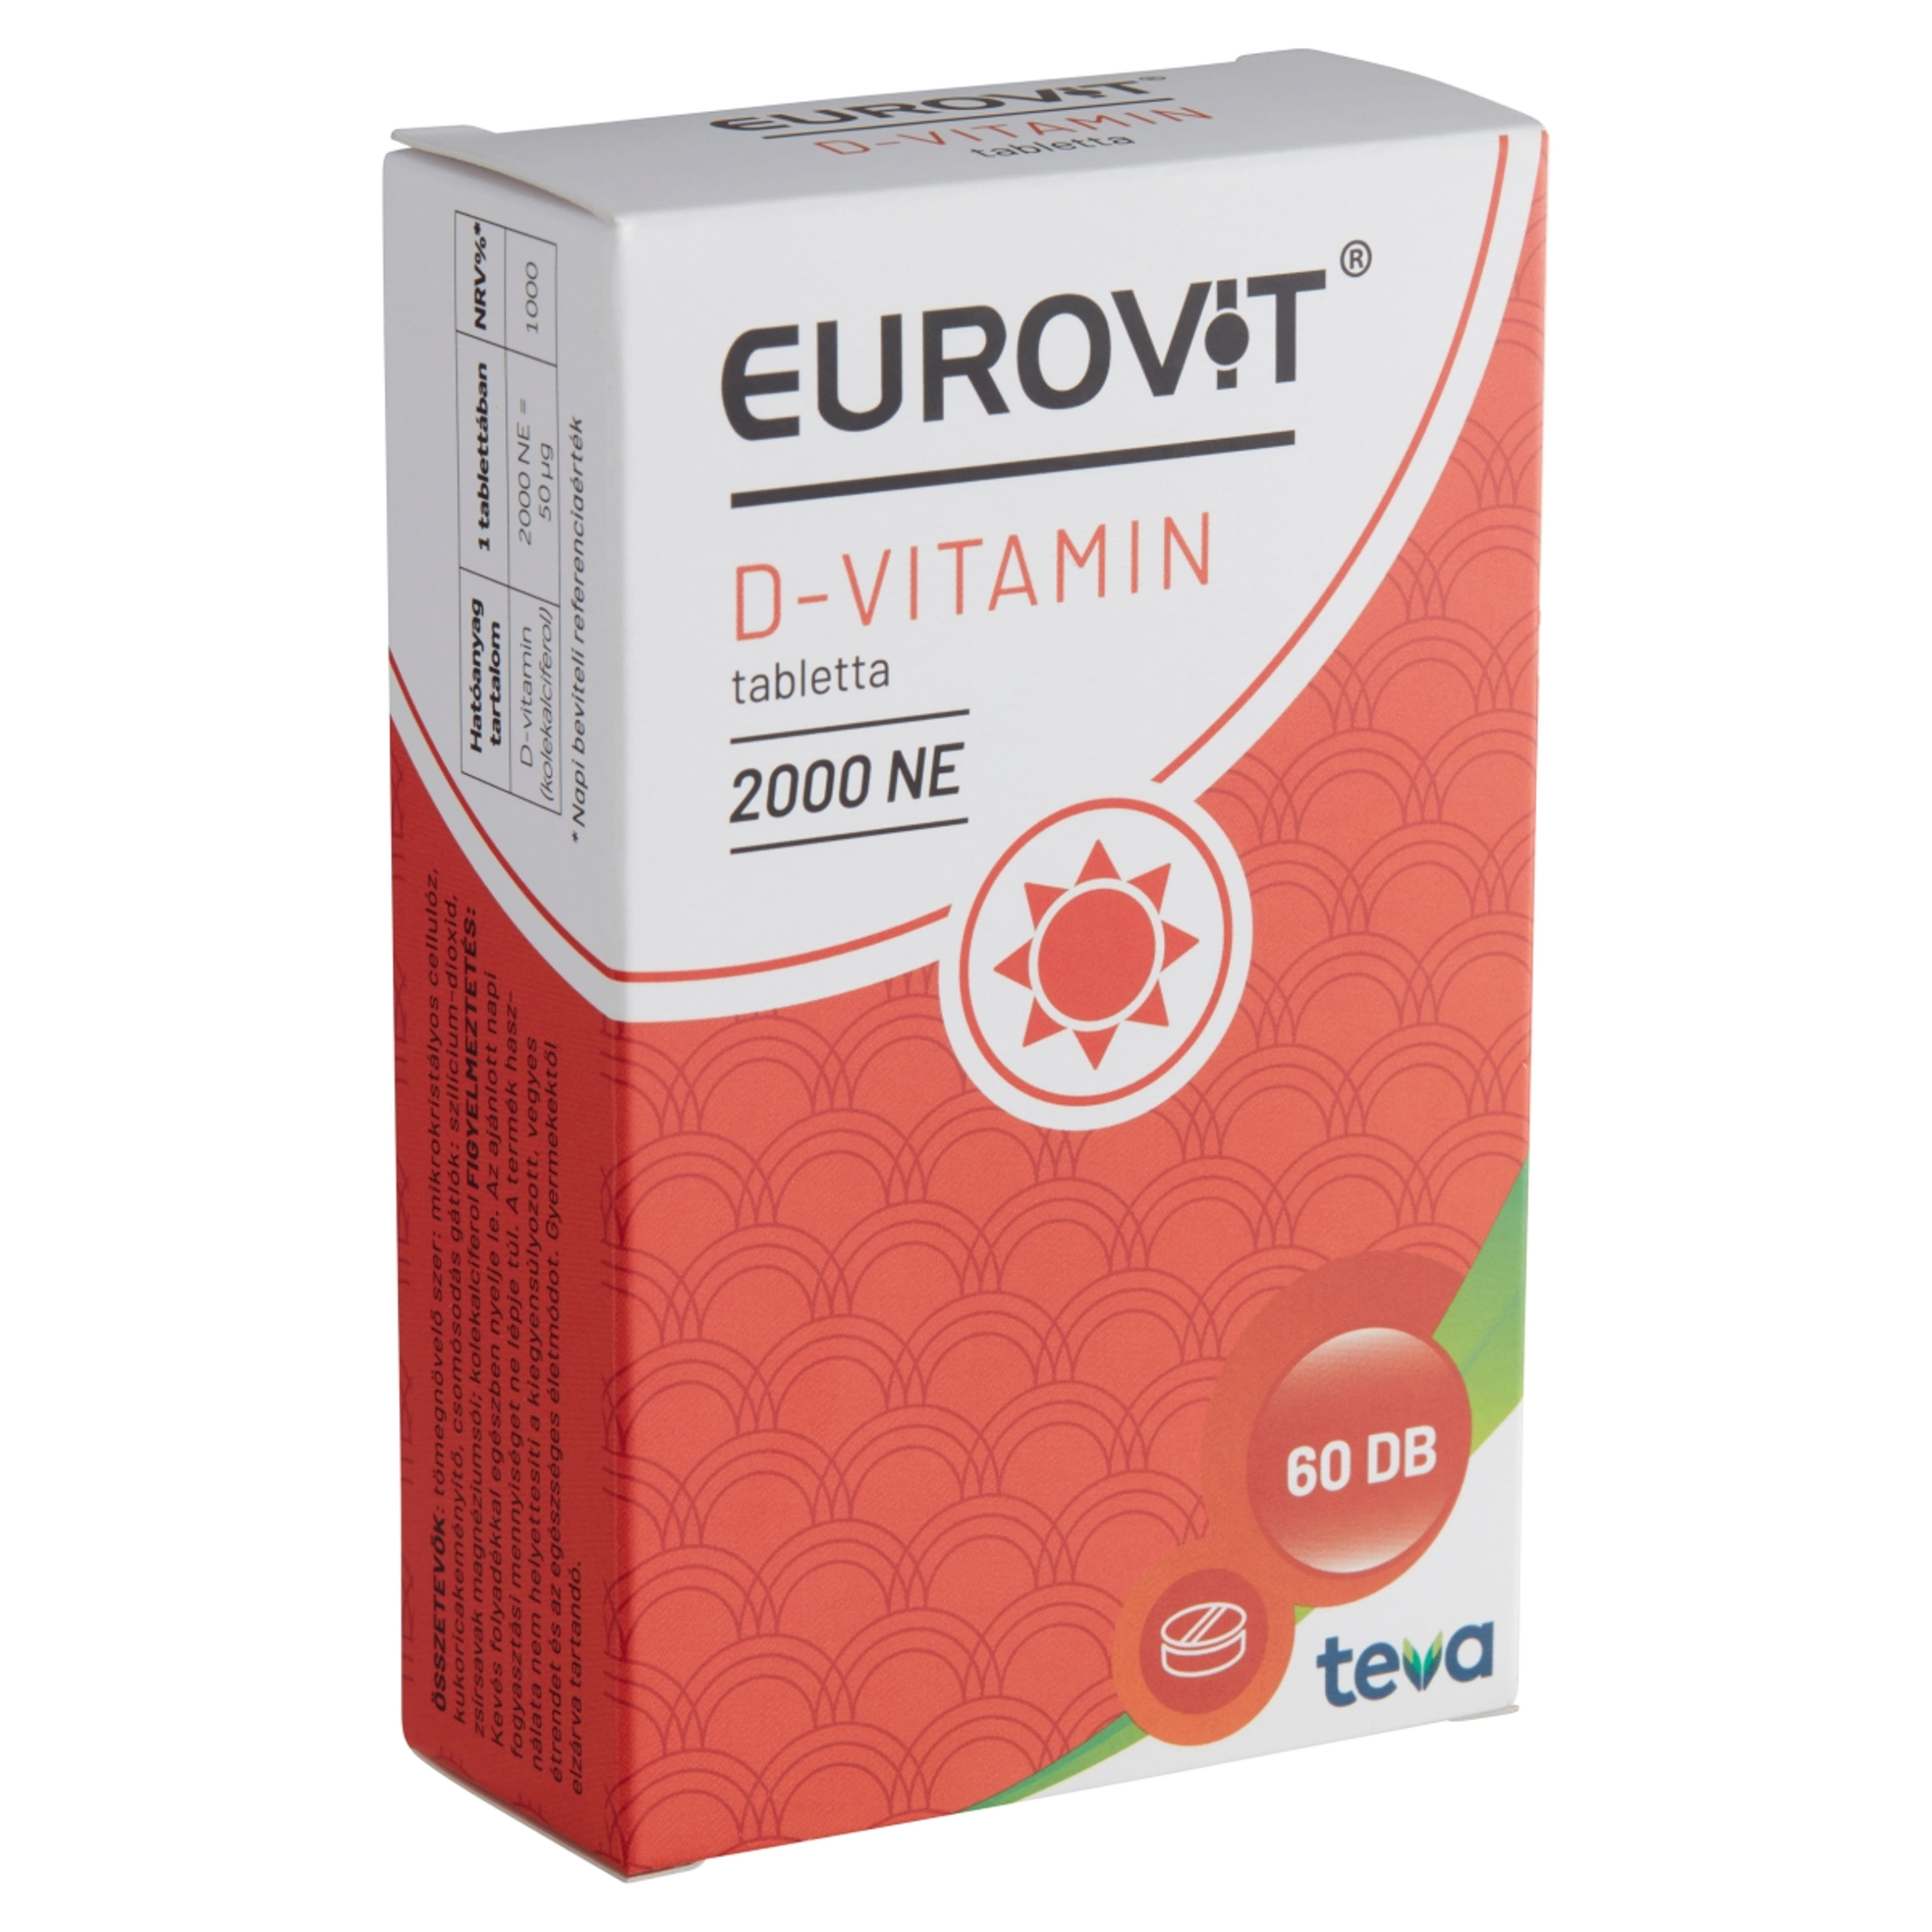 Eurovit d-vitamin 2000ne tabletta - 60 db-2